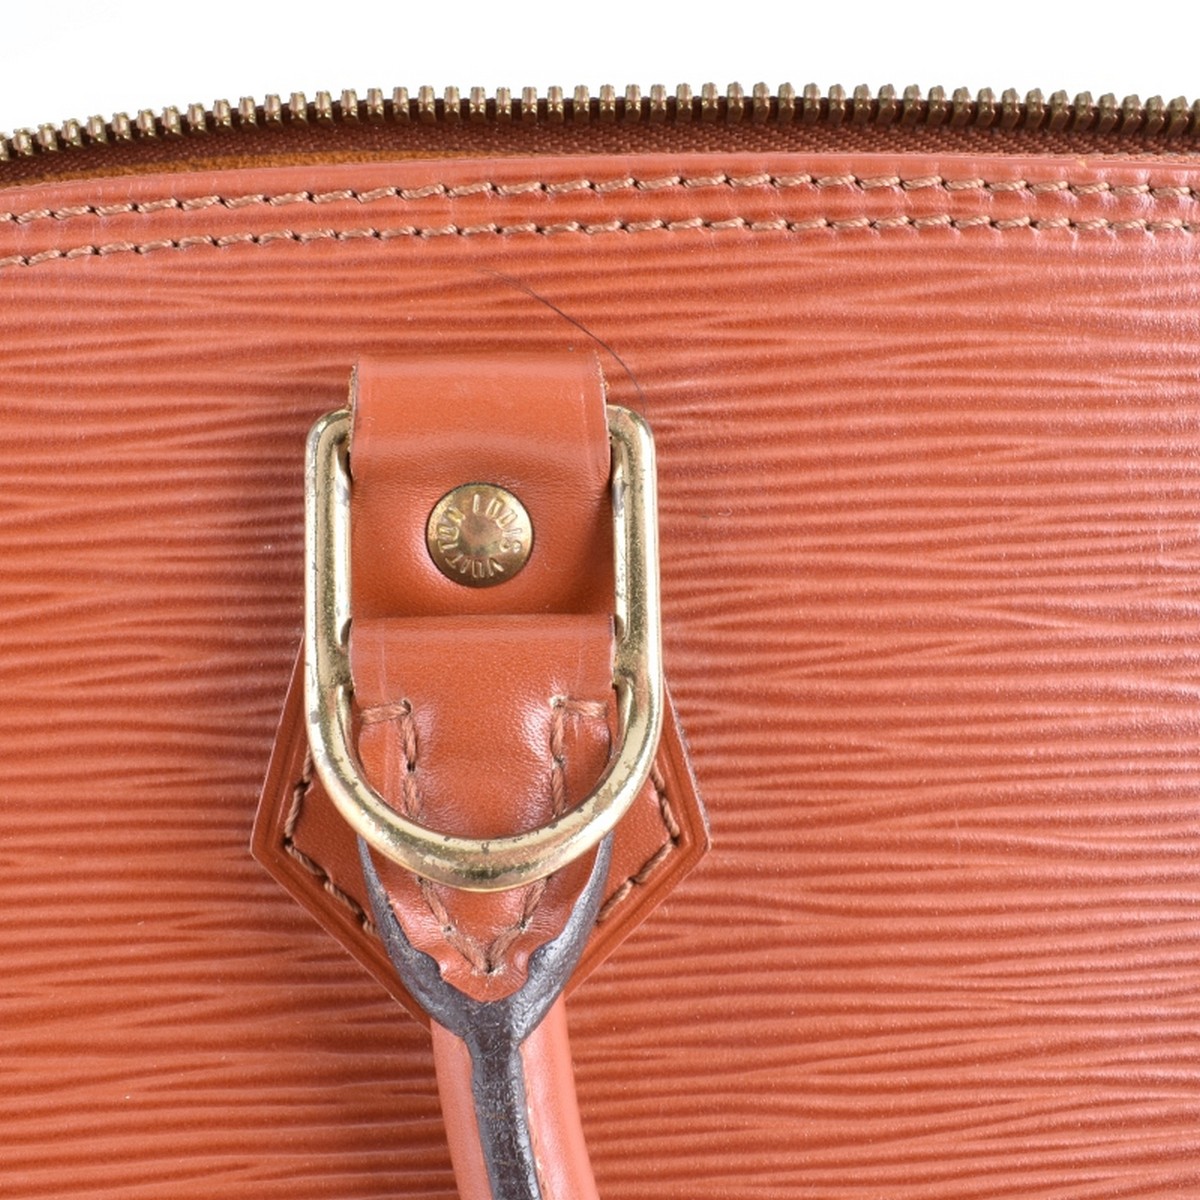 Louis Vuitton Tan Epi Leather Alma PM Bag